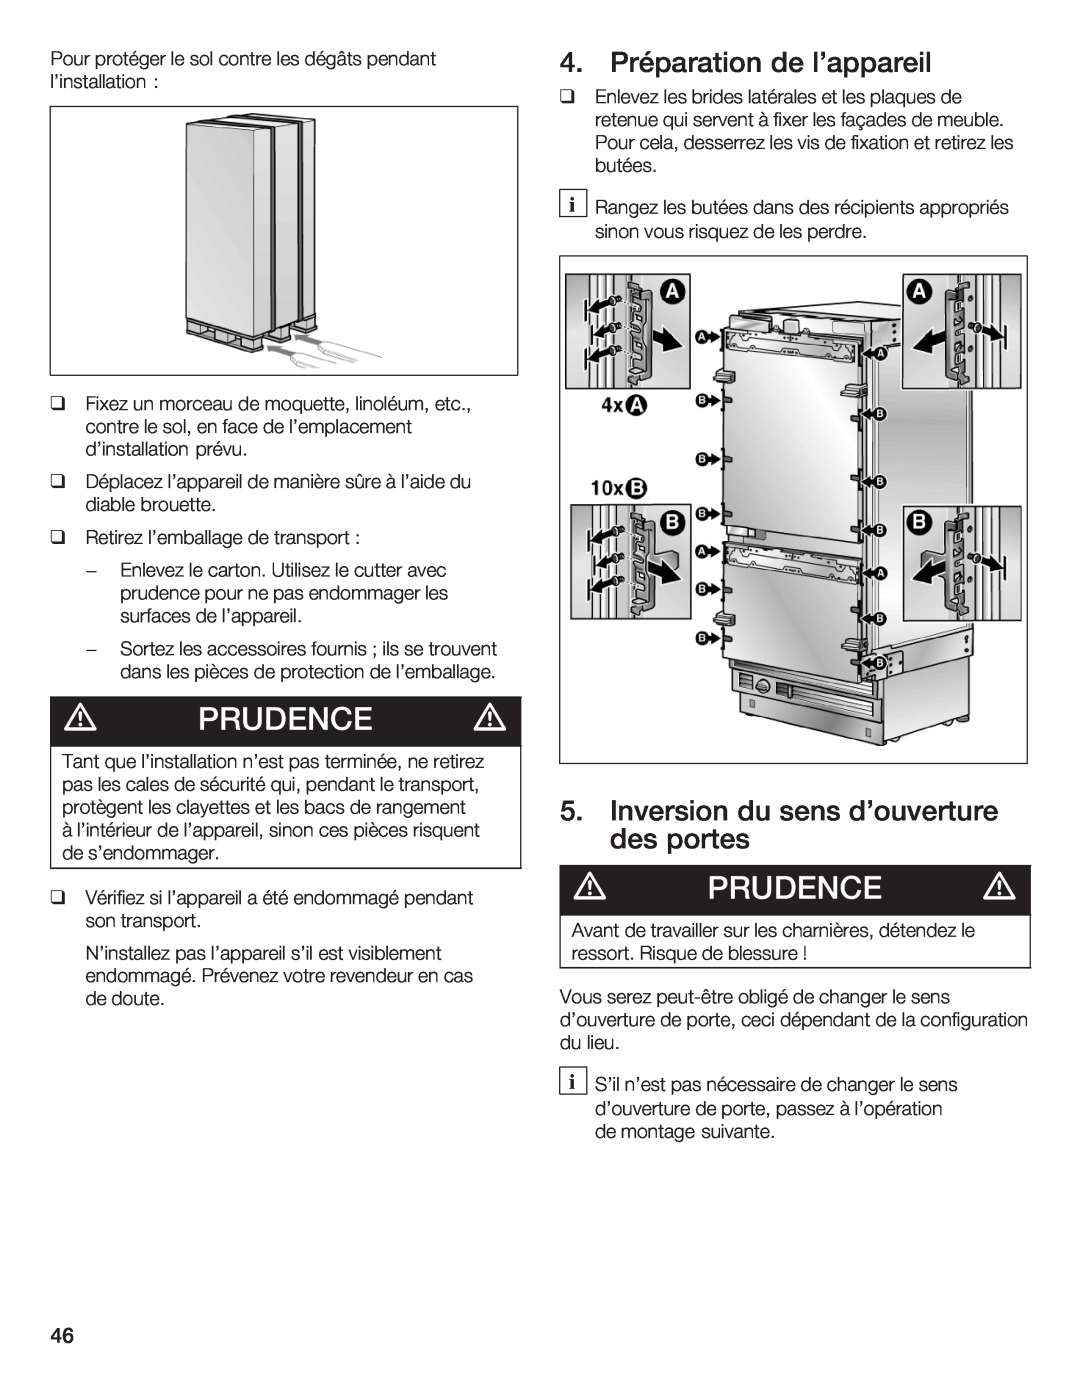 Thermador T36IB70NSP manual d PRUDENCE d, Préparation, lappareil, Inversion du sens douverture des portes 